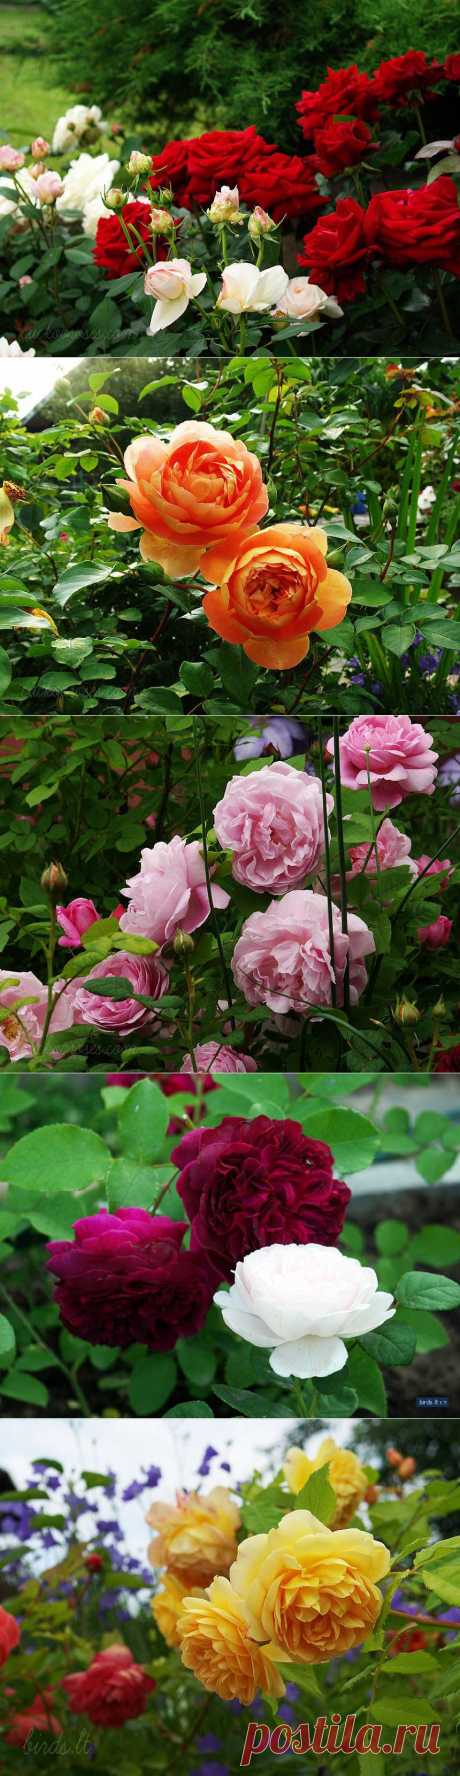 Розовый сад.